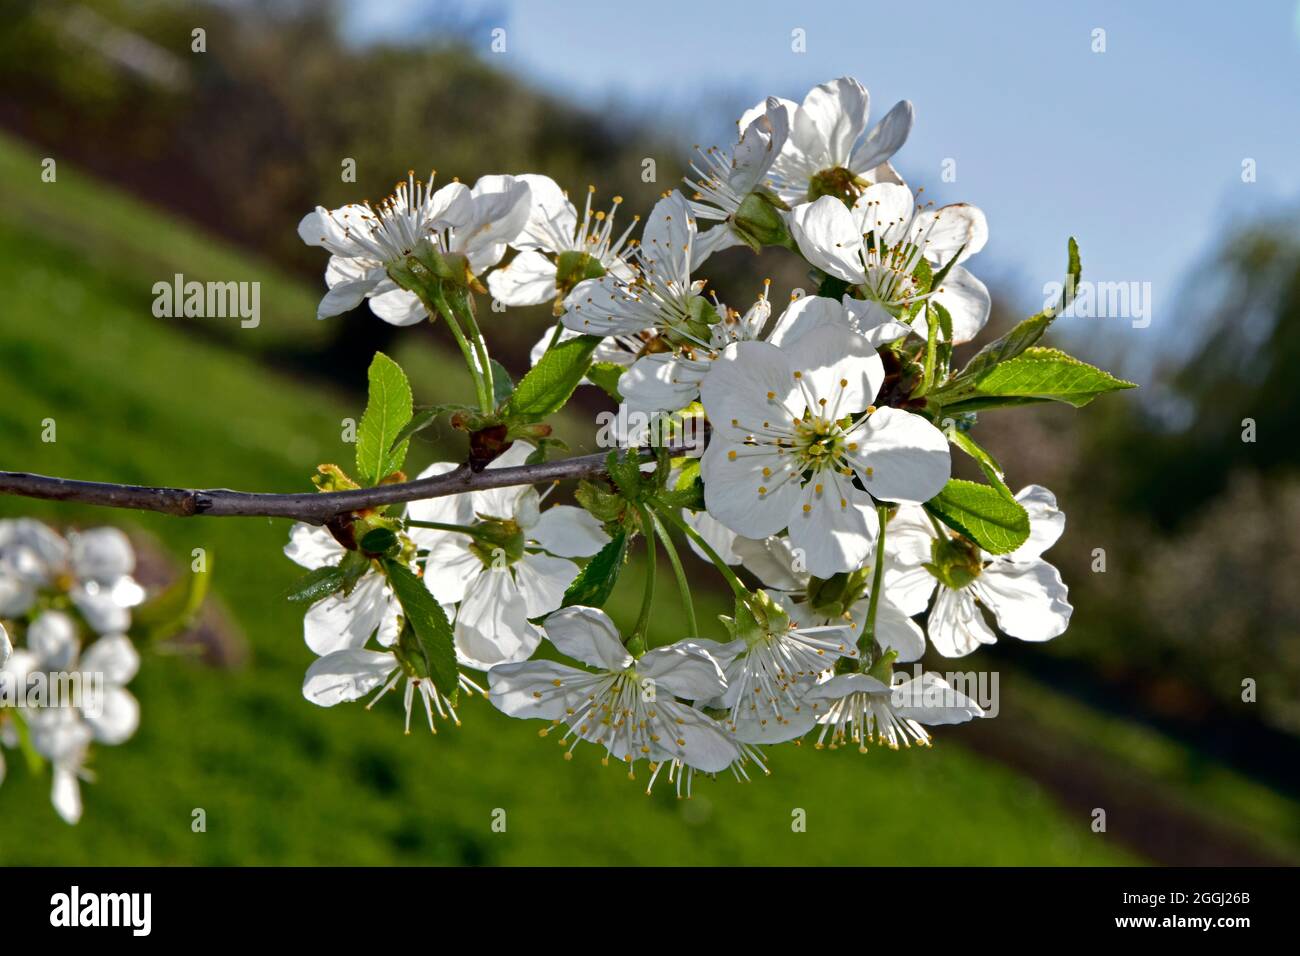 Ramita cubierta de flores de cerezo blanco, con fondo de jardín borroso, vista oblicua de primer plano. Foto de stock